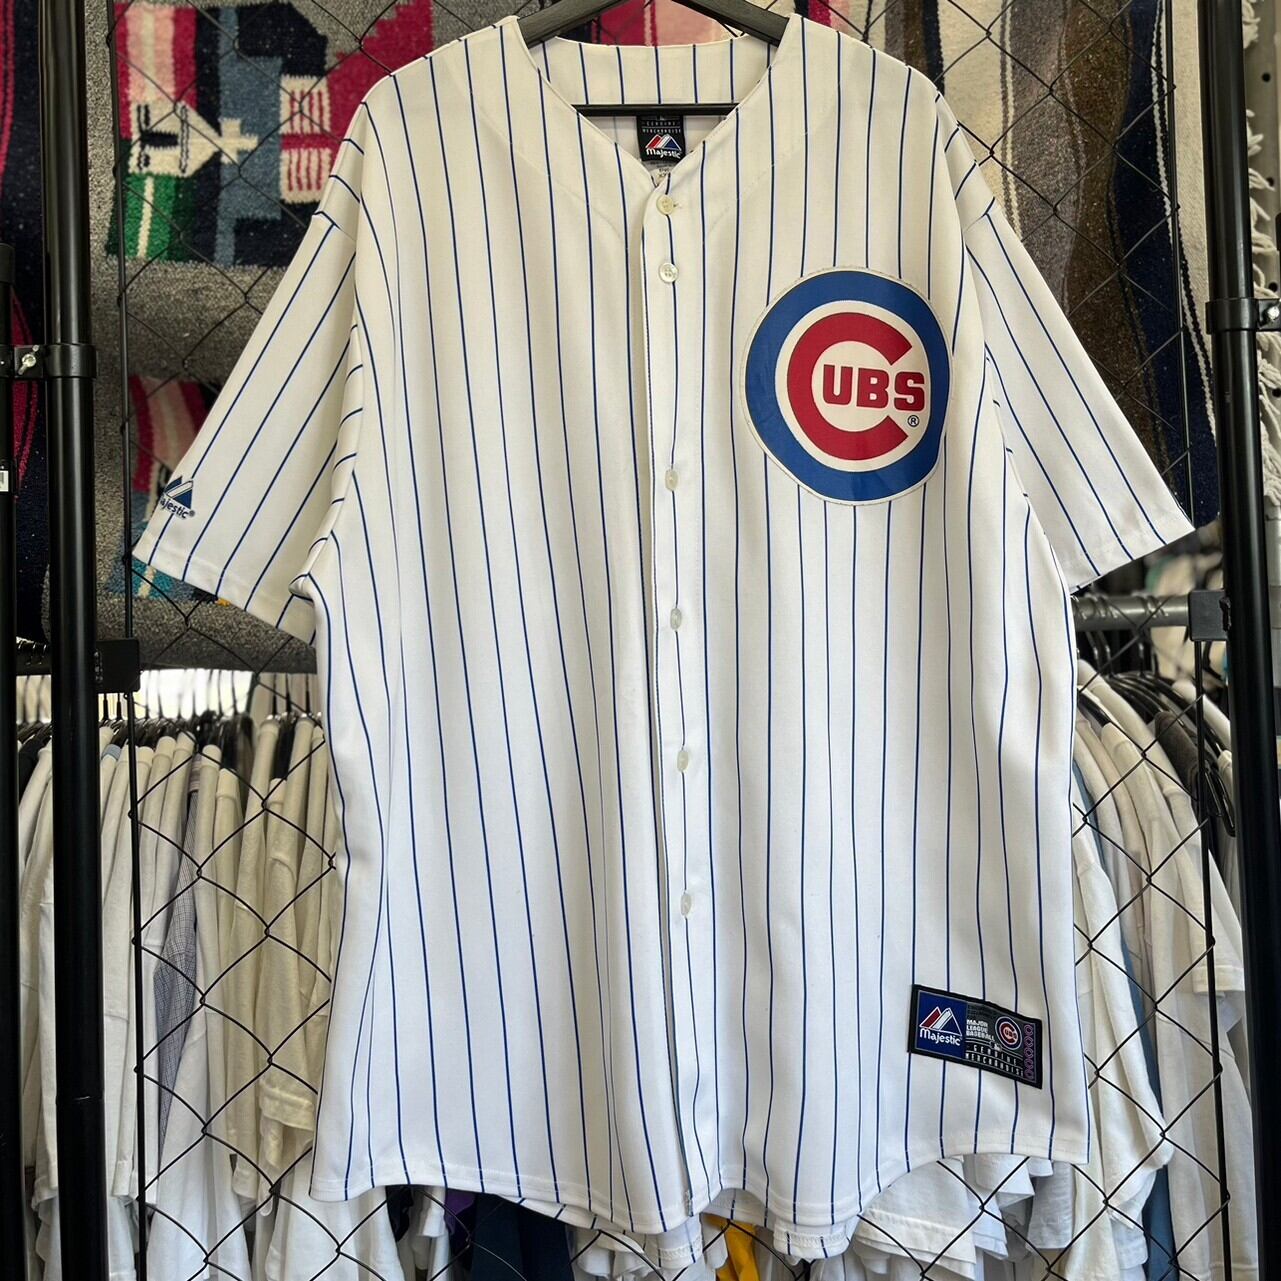 マジェスティック majestic MLB CHICAGO CUBS シカゴカブス ゲームシャツ ベースボールシャツ USA製 メンズM /eaa338057